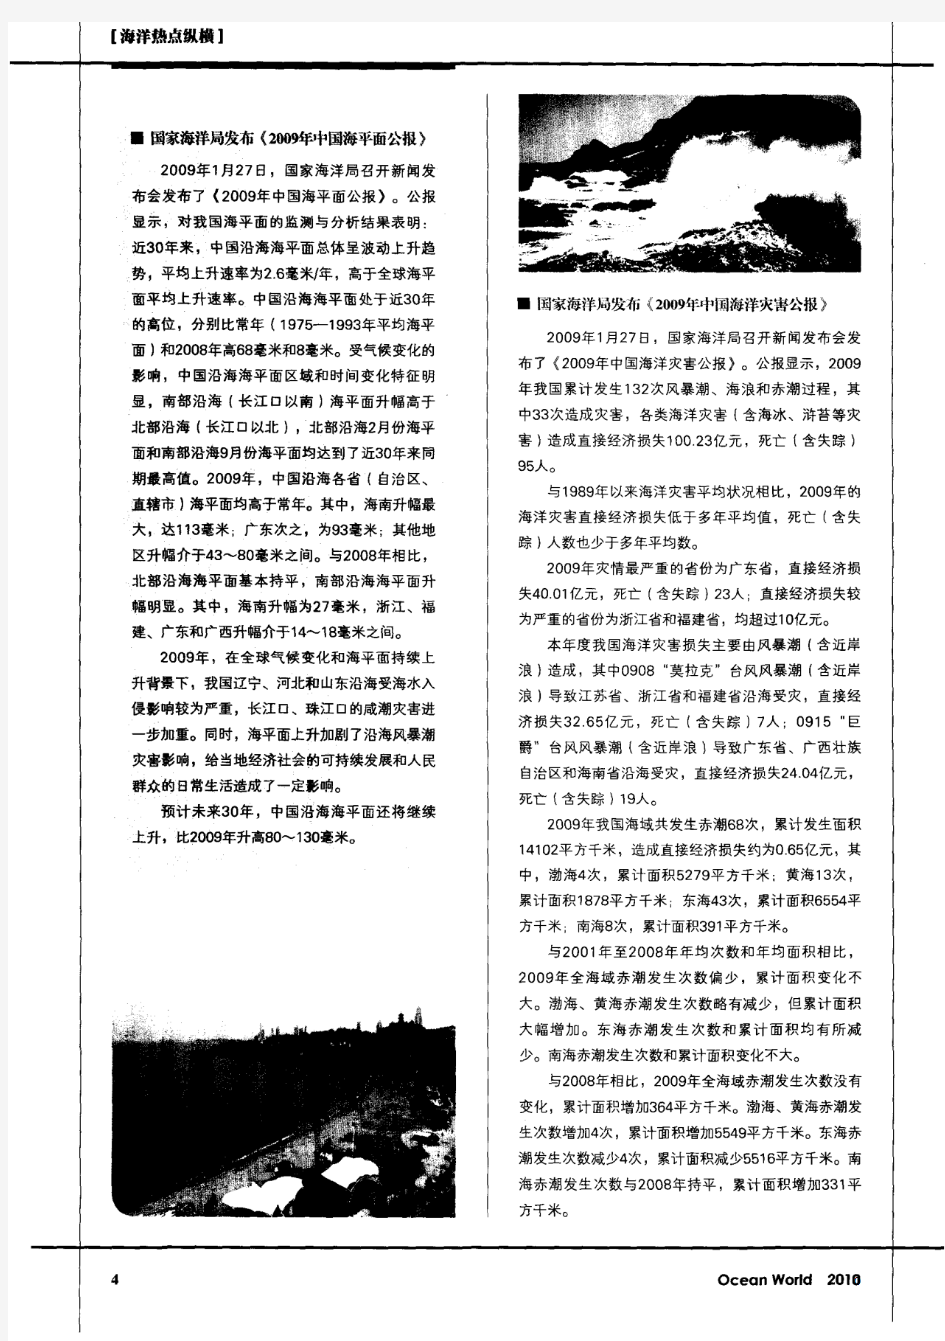 国家海洋局发布《2009年中国海平面公报》